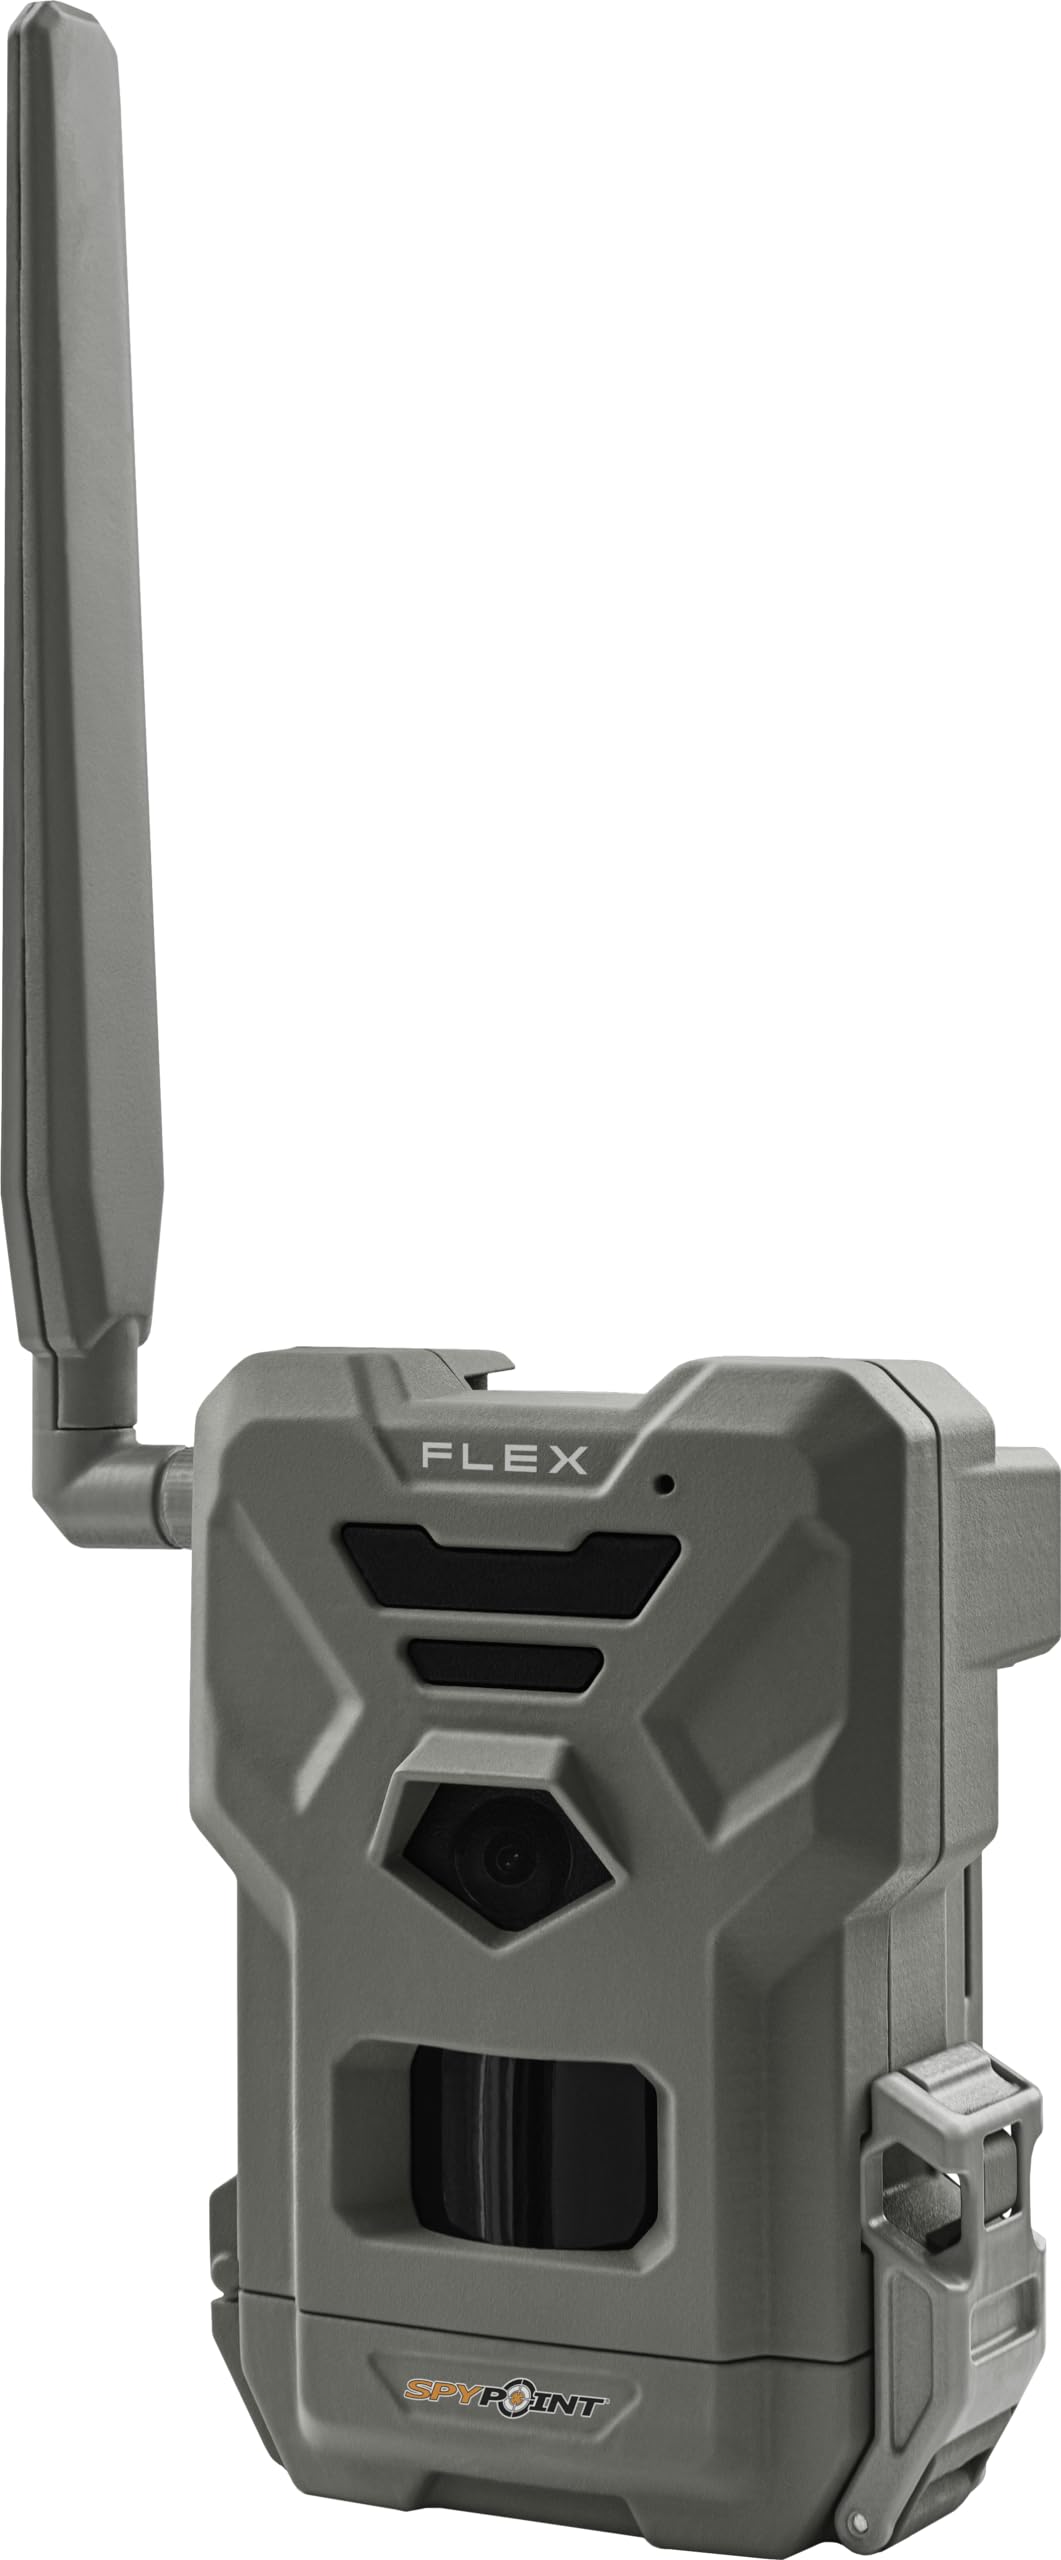 Spypoint FLEX Wildkamera 33 Megapixel Tonaufzeichnung, Zeitrafferfunktion, 4G Bildübertragung, GSM-